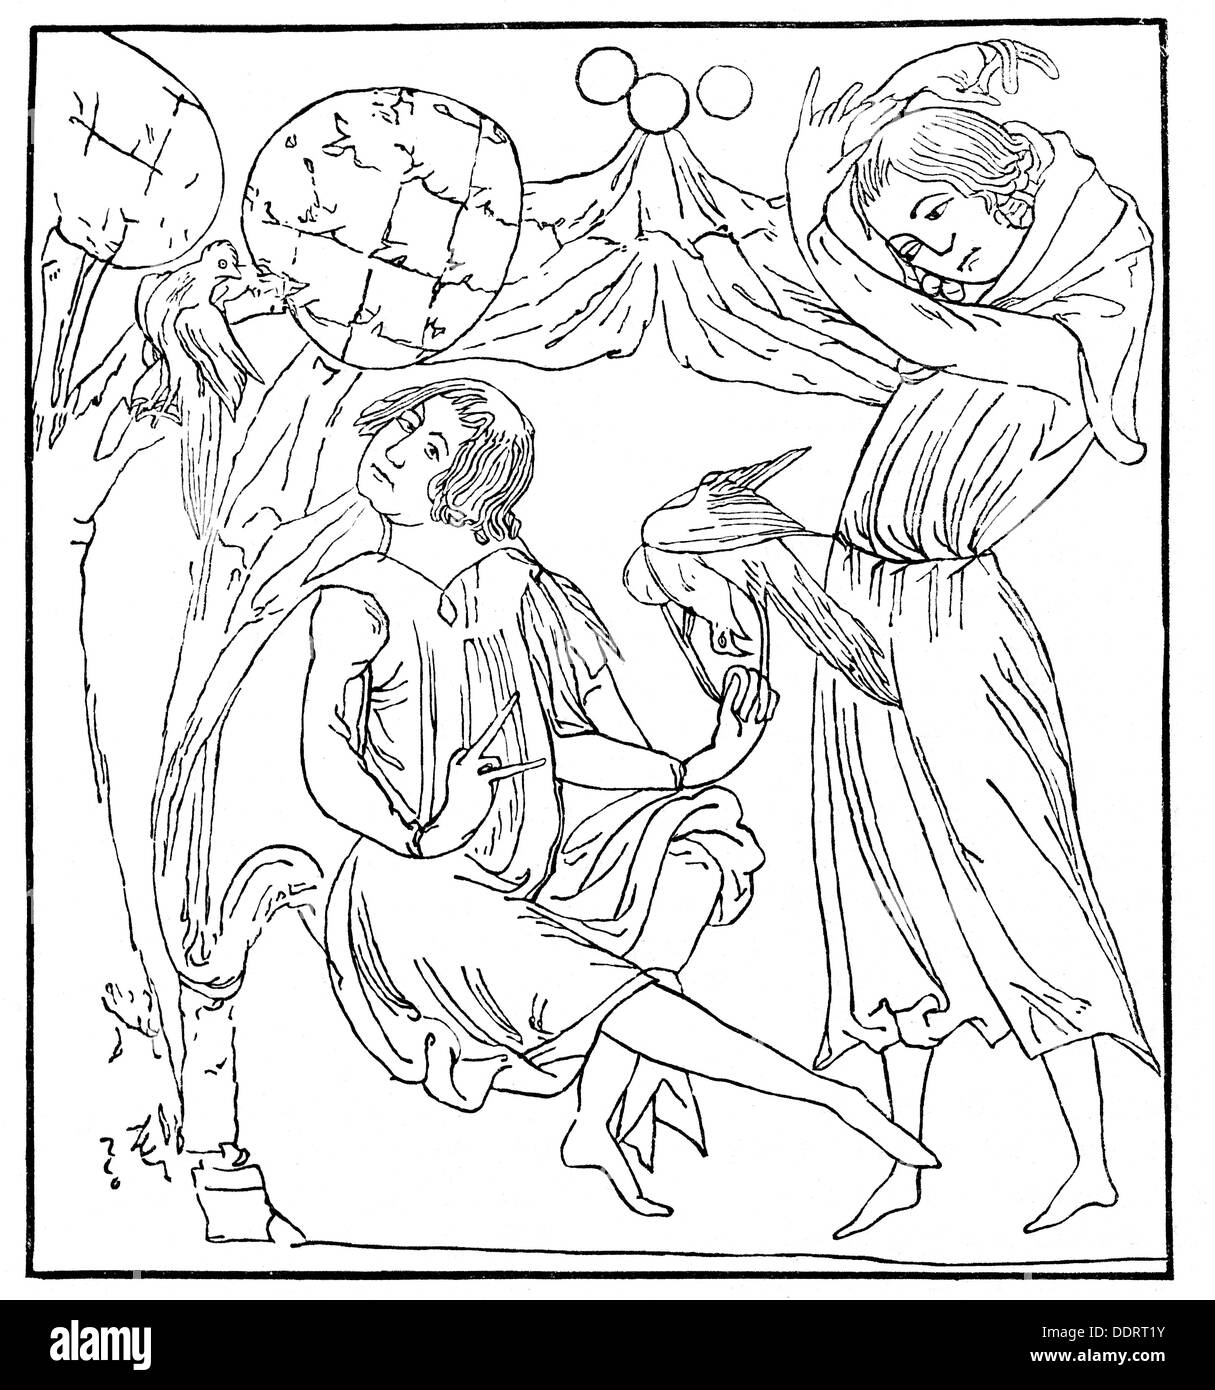 Gottfried von Strassburg, + vers 1215, auteur / écrivain allemand, oevre, 'Tristan', sa mère Riwalin en liens d'amour, après miniature du manuscrit de Munich, gravure en bois, XIXe siècle, Banque D'Images